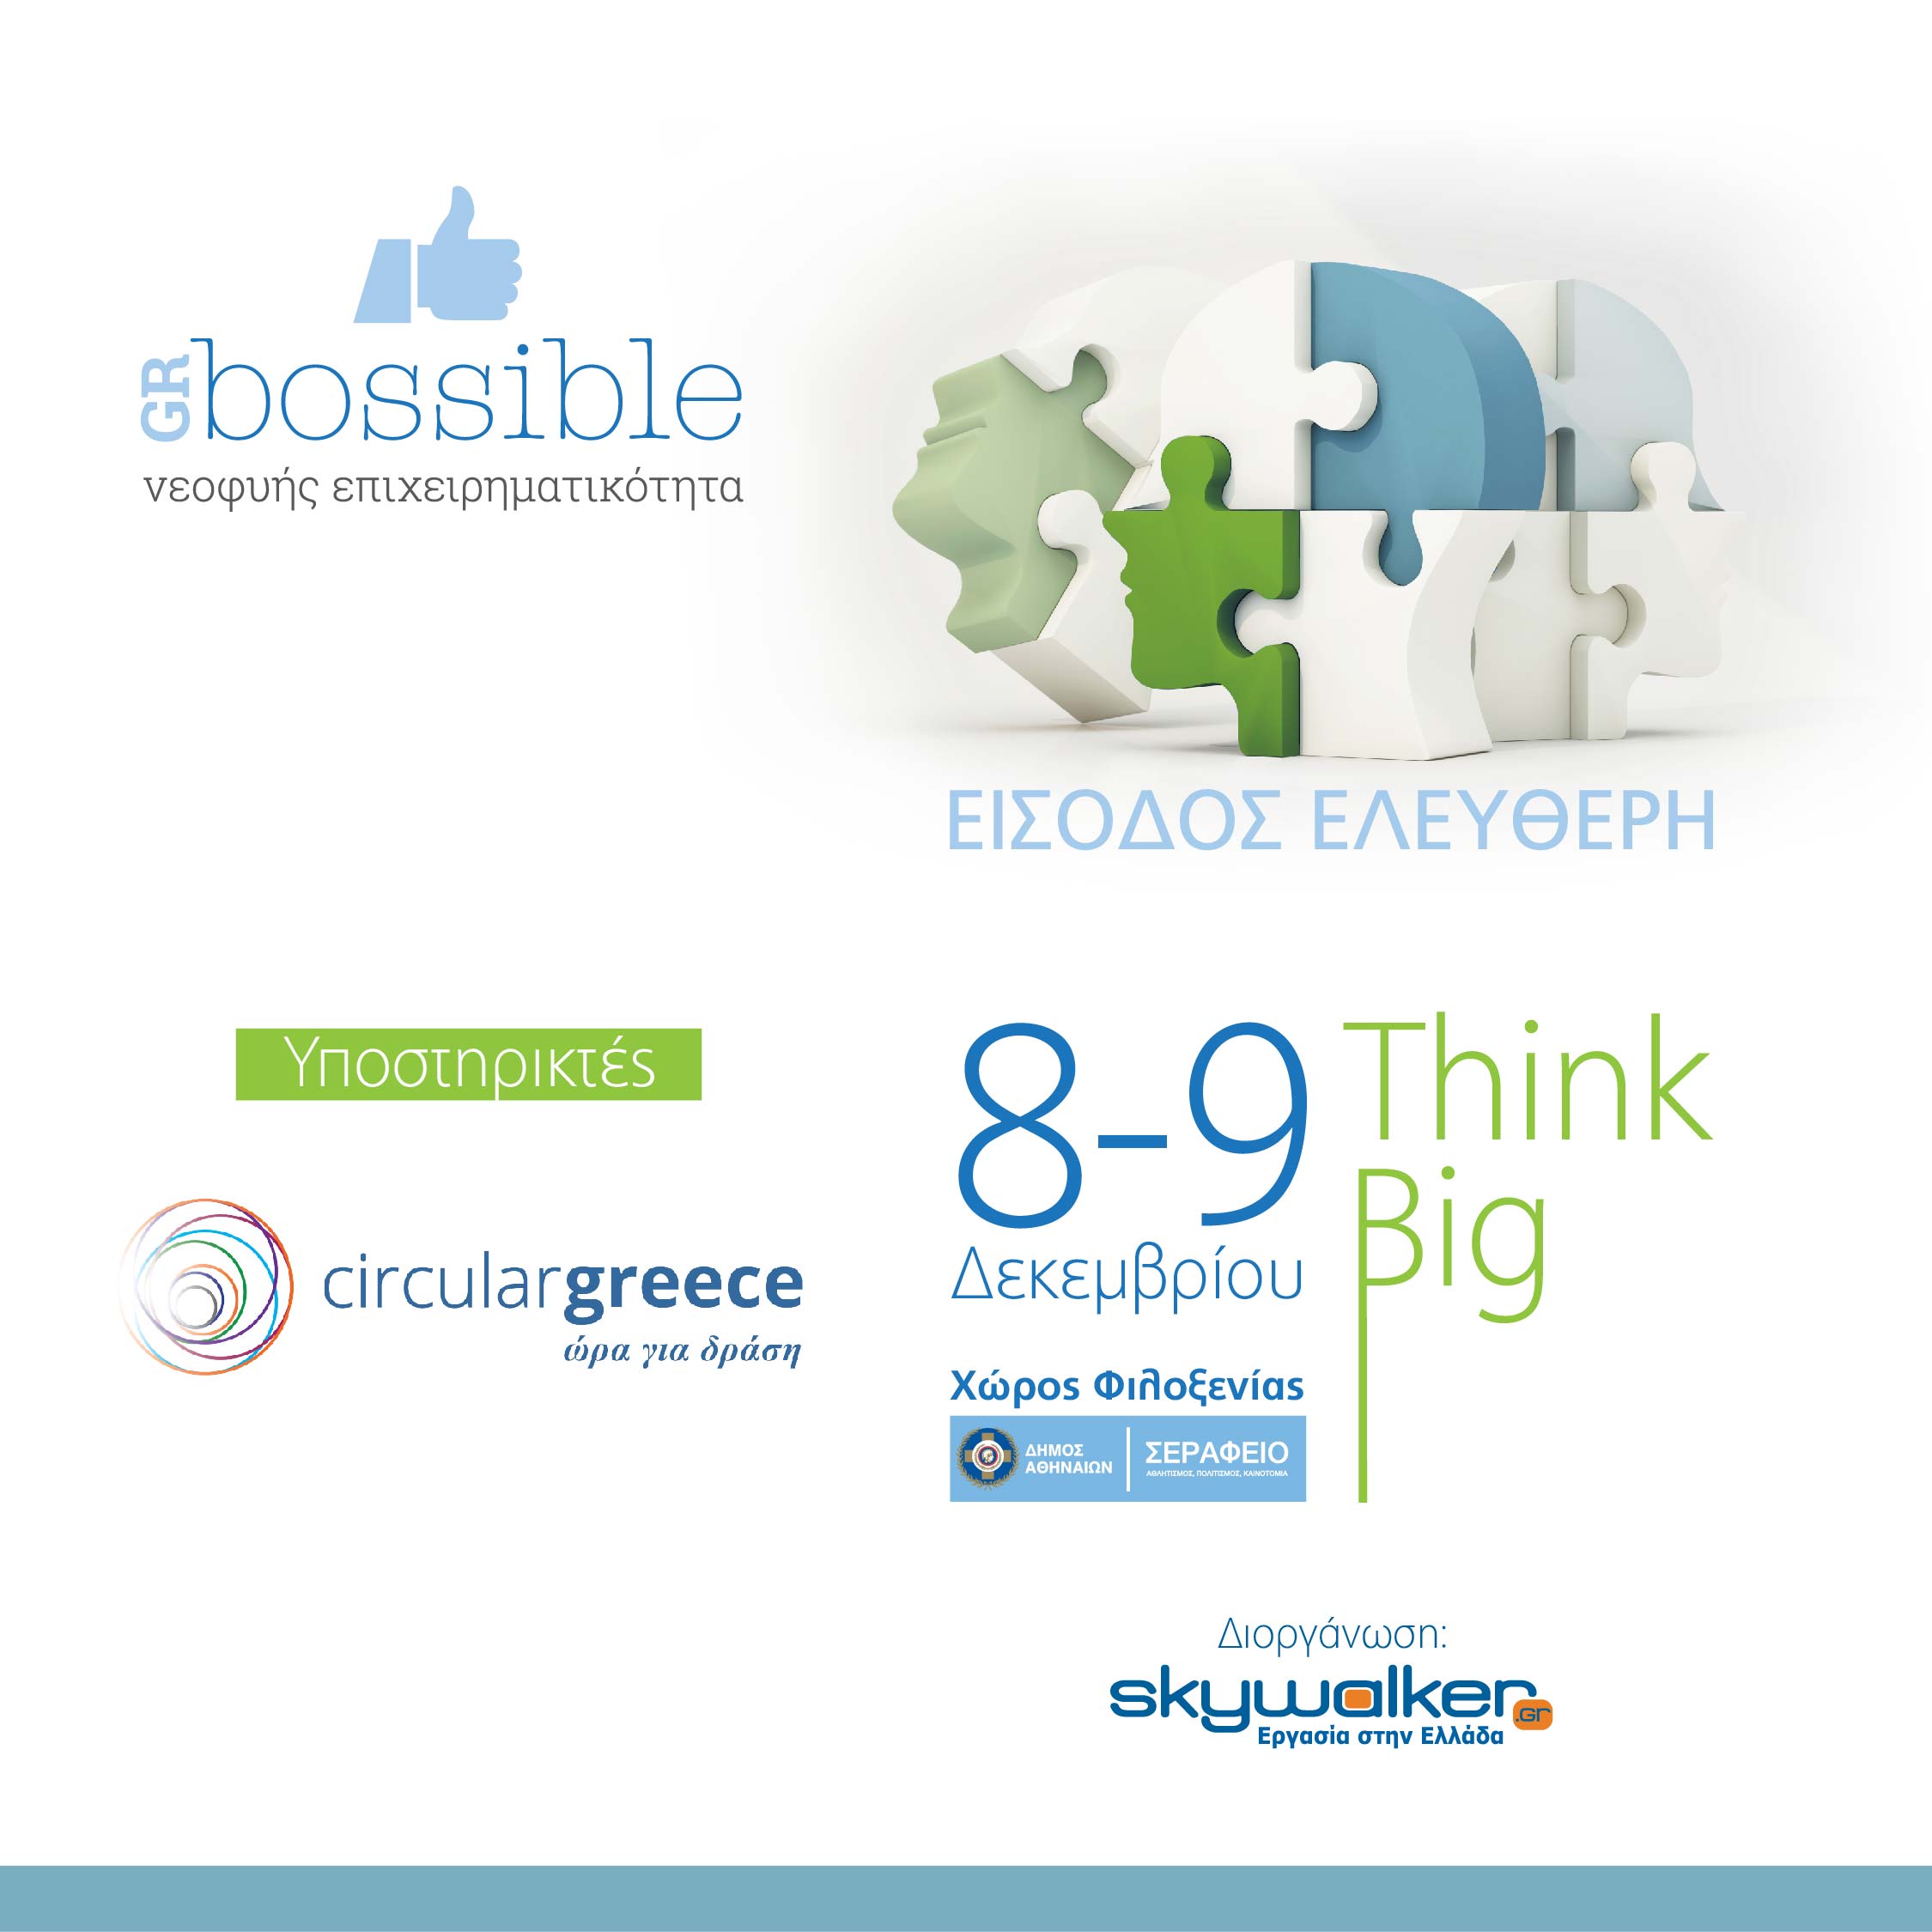 Διοργάνωση 6ου Φεστιβάλ Νεοφυούς Επιχειρηματικότητας GRBossible “Think Big” με την υποστήριξη του Έργου LIFE-IP CEI-Greece και του Πράσινου Ταμείου